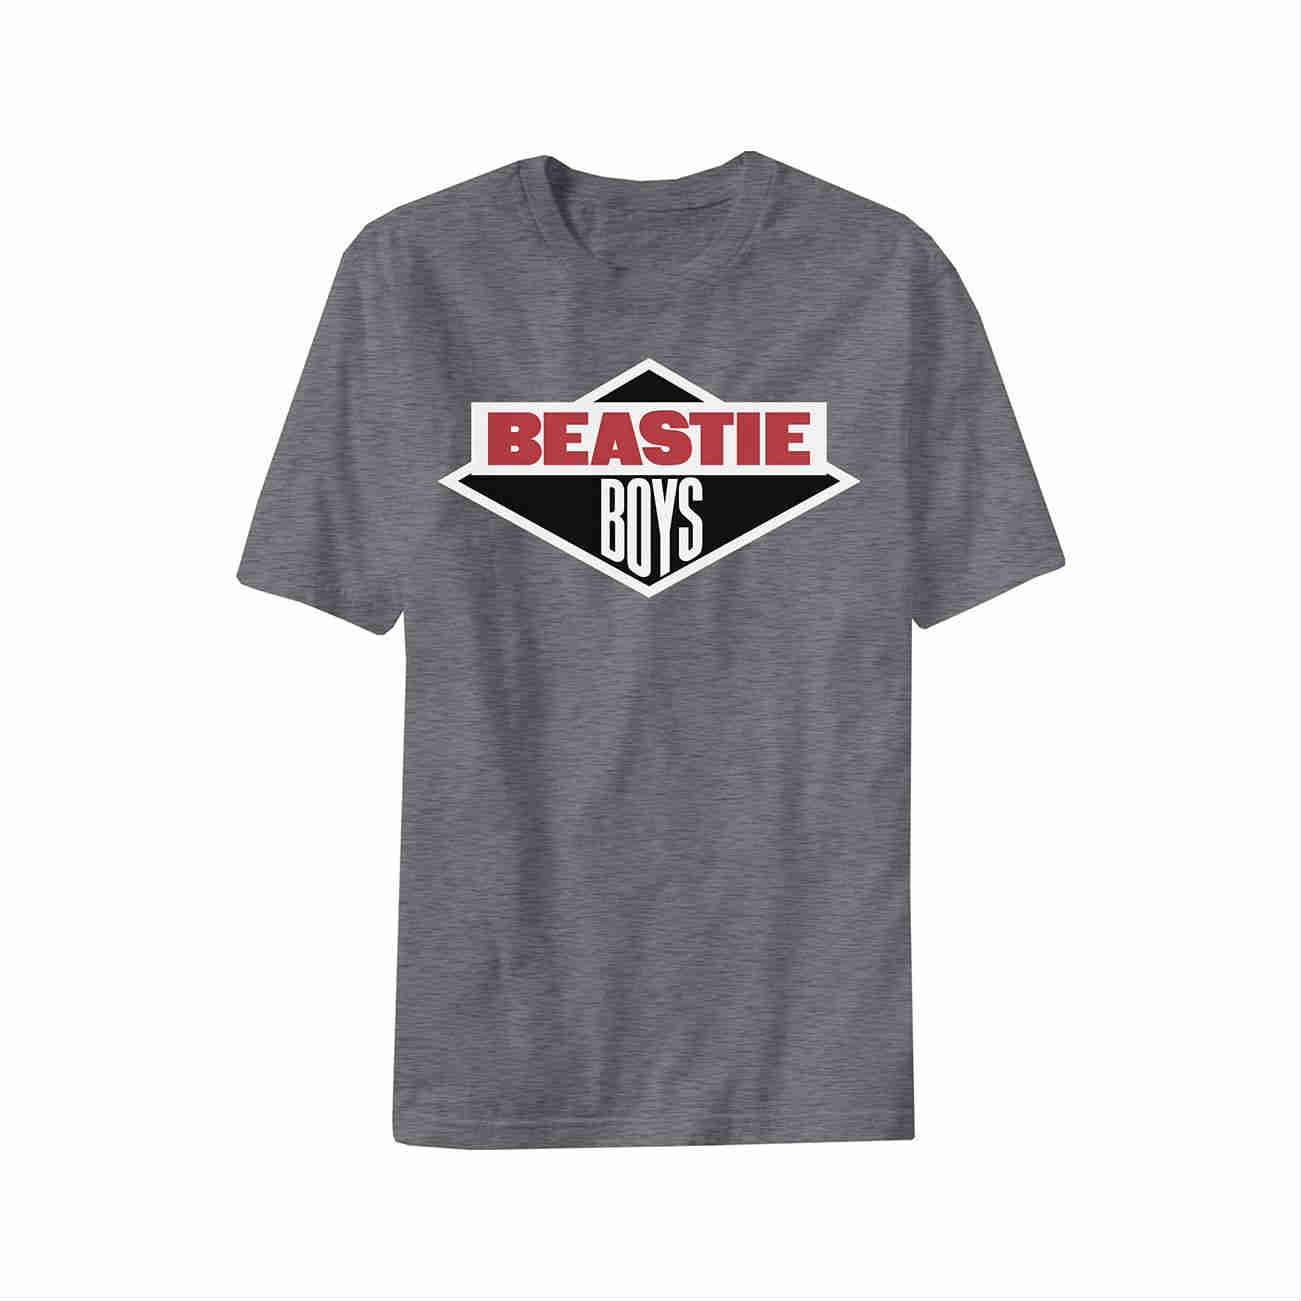 beastie boys ビースティーボーイズ Tシャツ コピーライト©️有りMegadeth